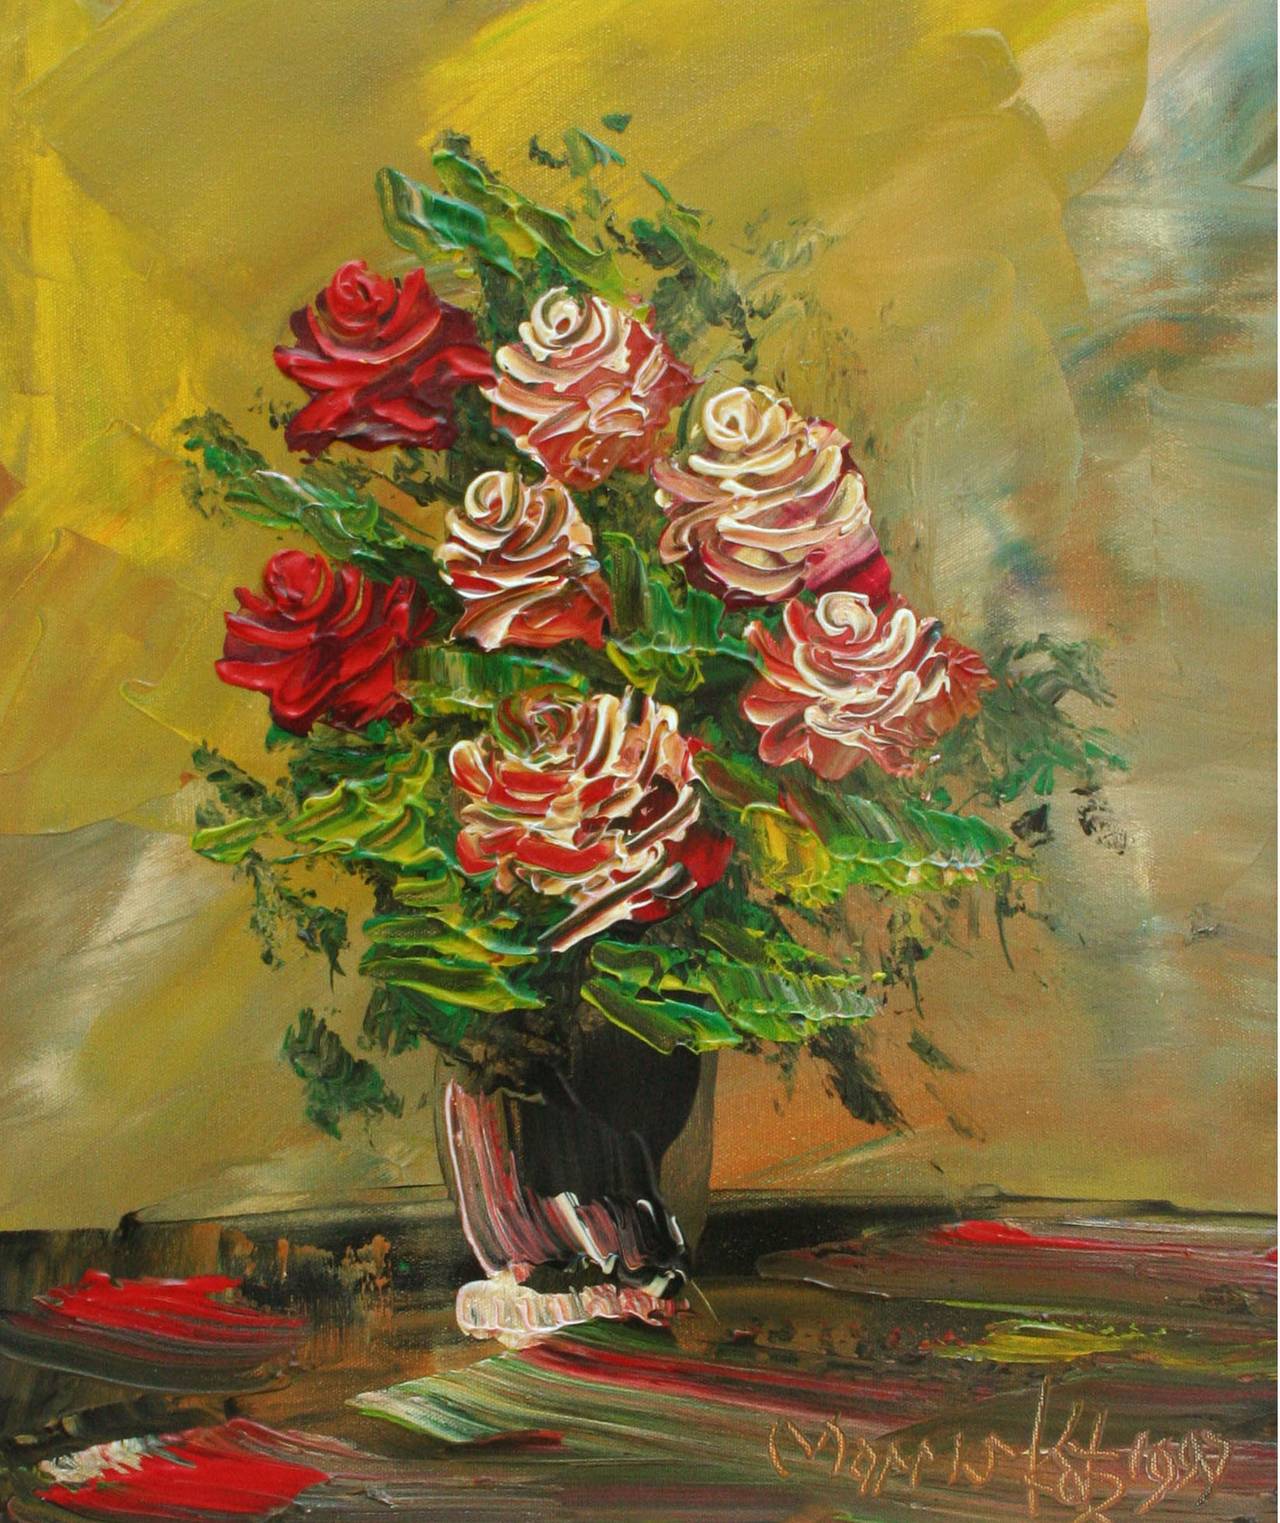 Rote Rosen, Impasto-Blumenstillleben des späten 20. Jahrhunderts, gebrochener Künstler – Painting von Morris Katz